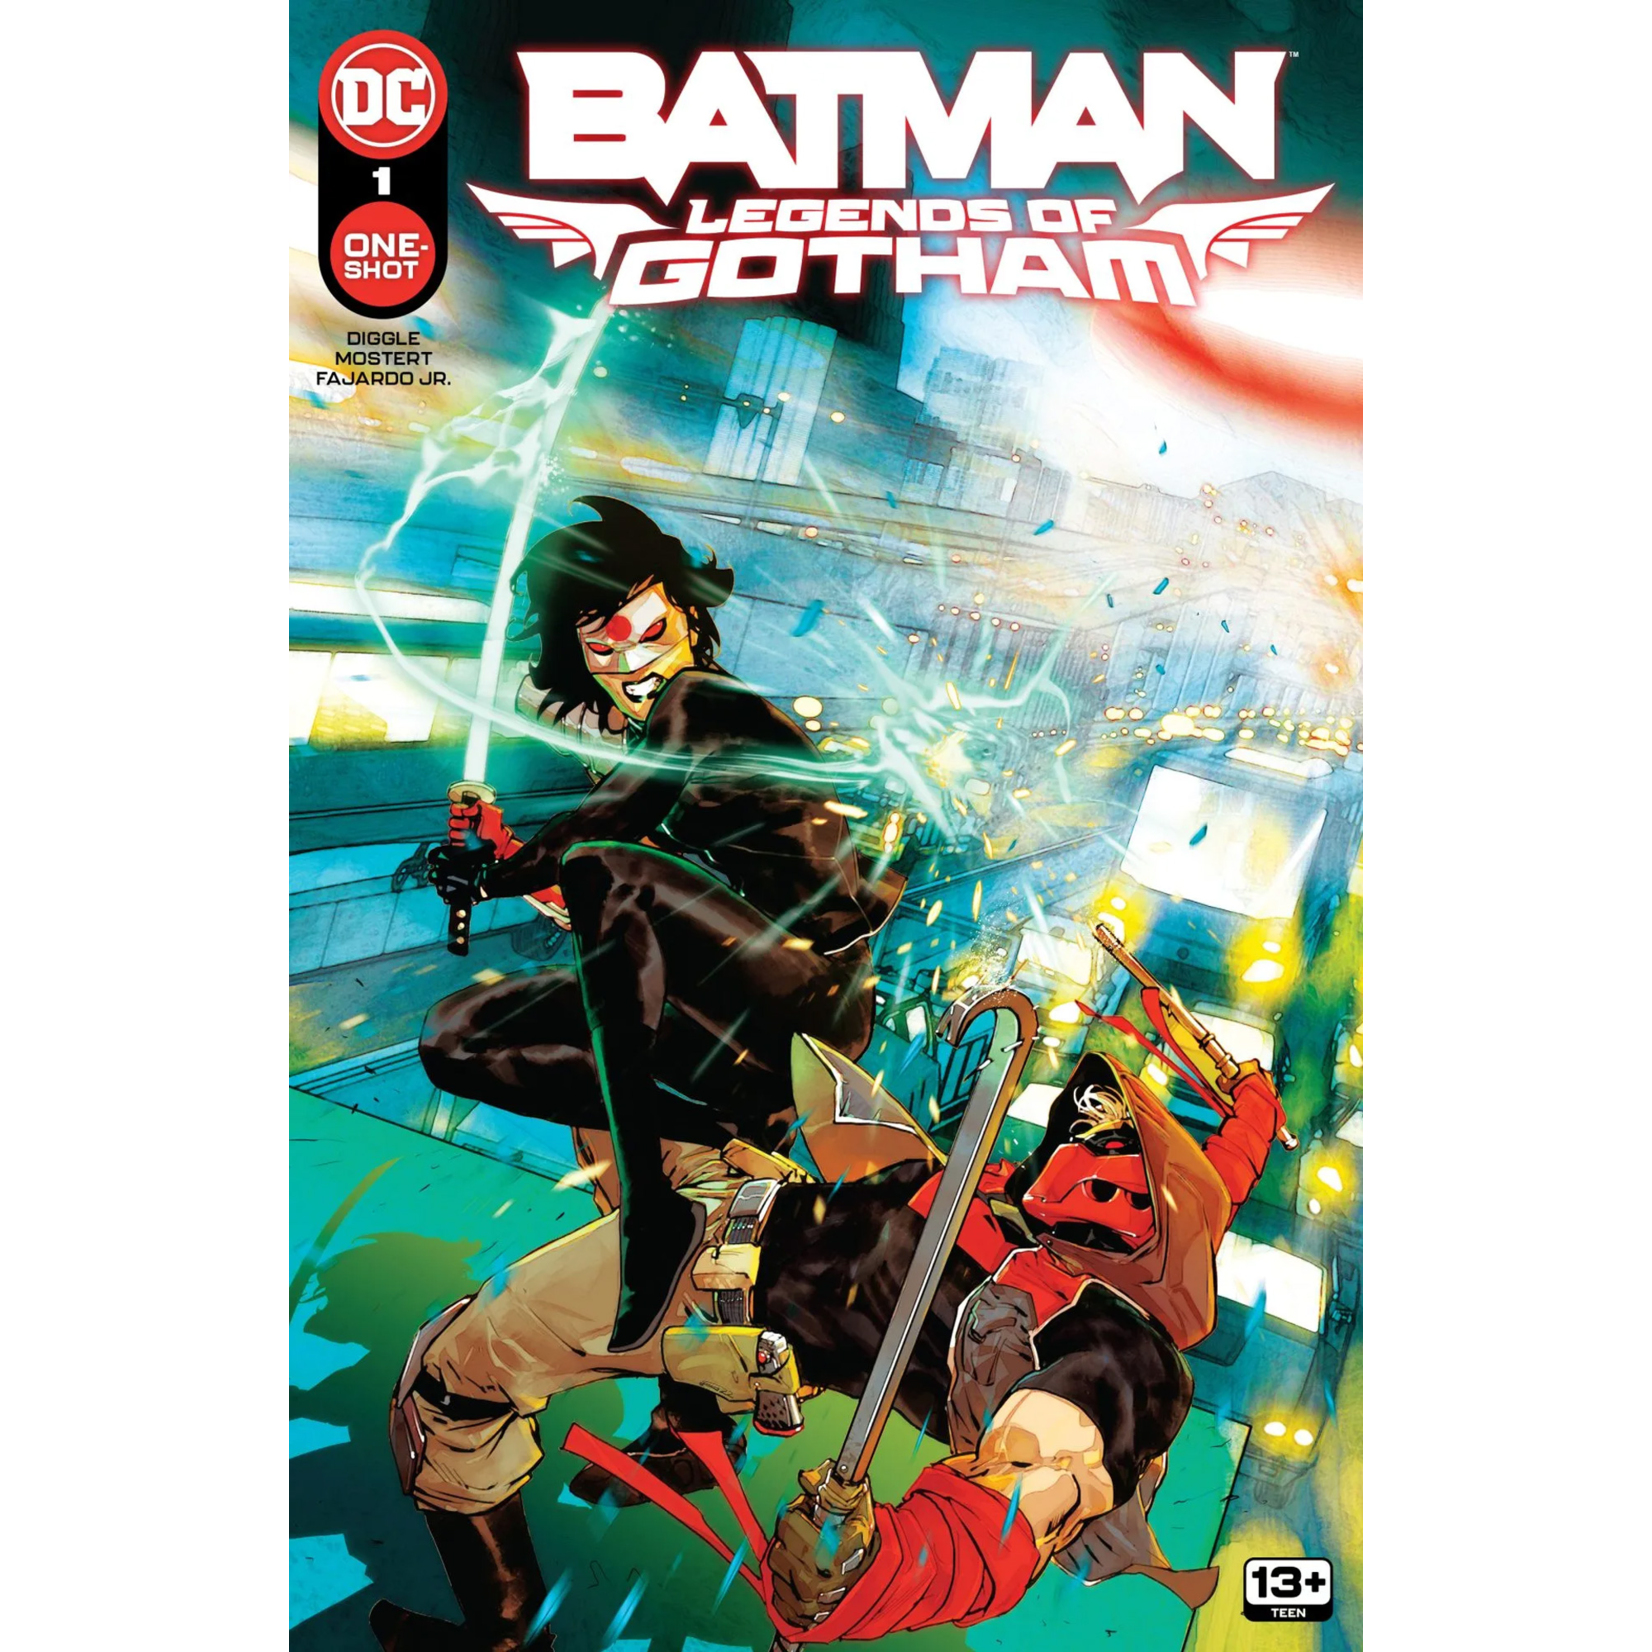 DC Comics BATMAN: LEGENDS OF GOTHAM #1